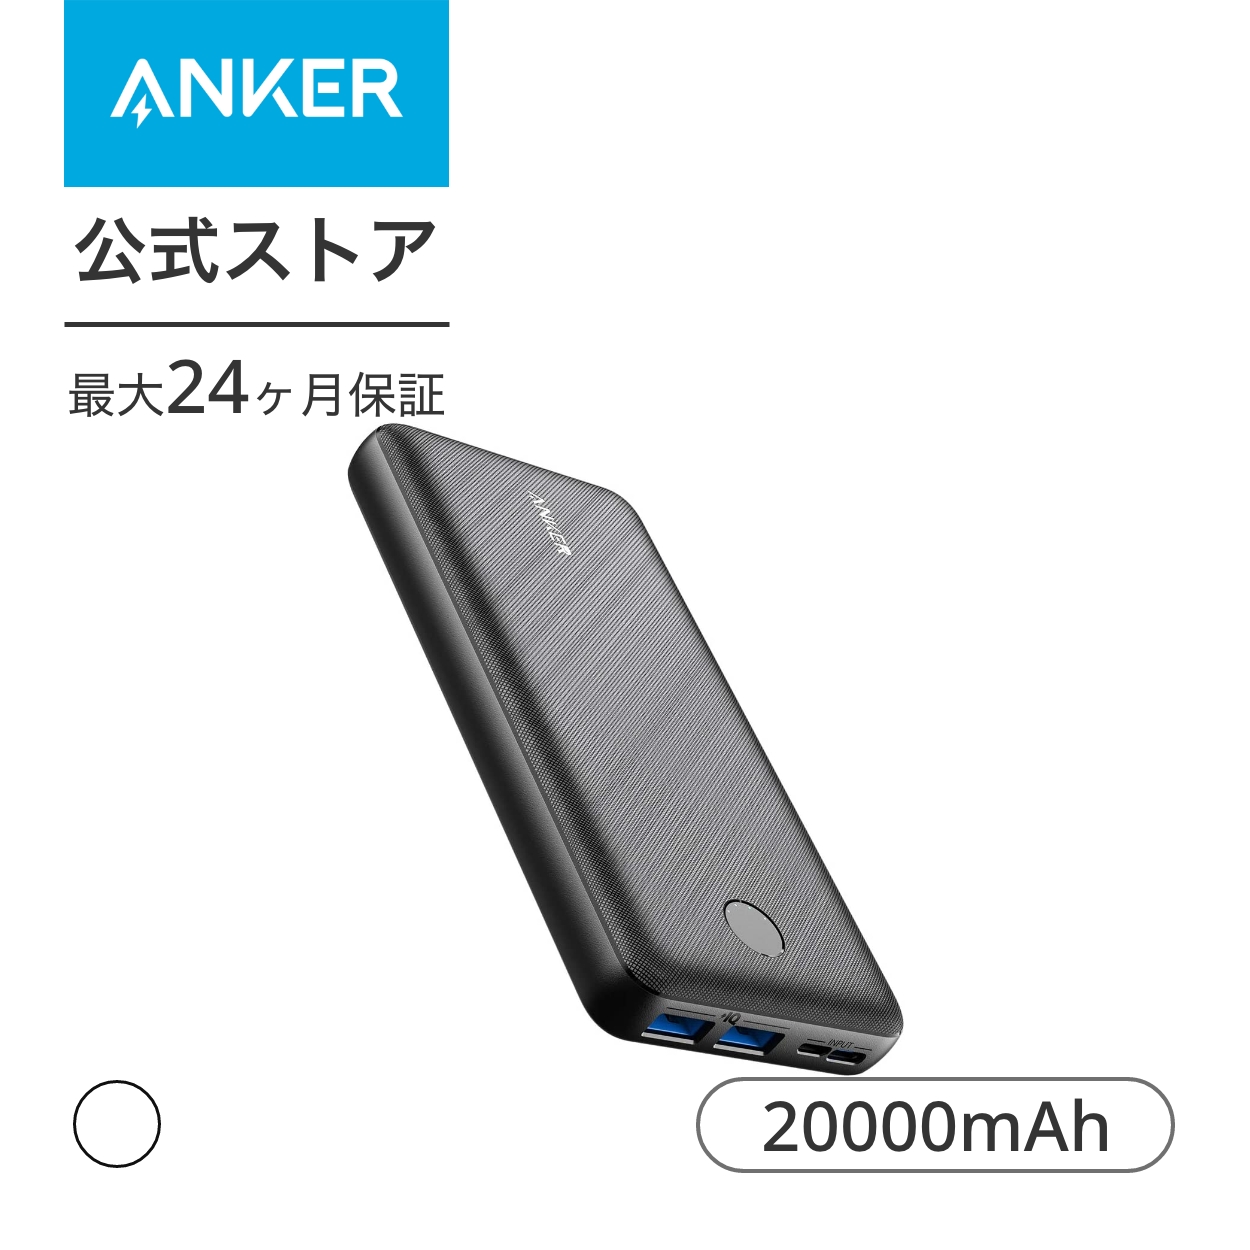 11周年記念イベントがAnker PowerCore Essential 20000 (モバイルバッテリー 大容量 20000mAh) iPhone  Android 各種対応